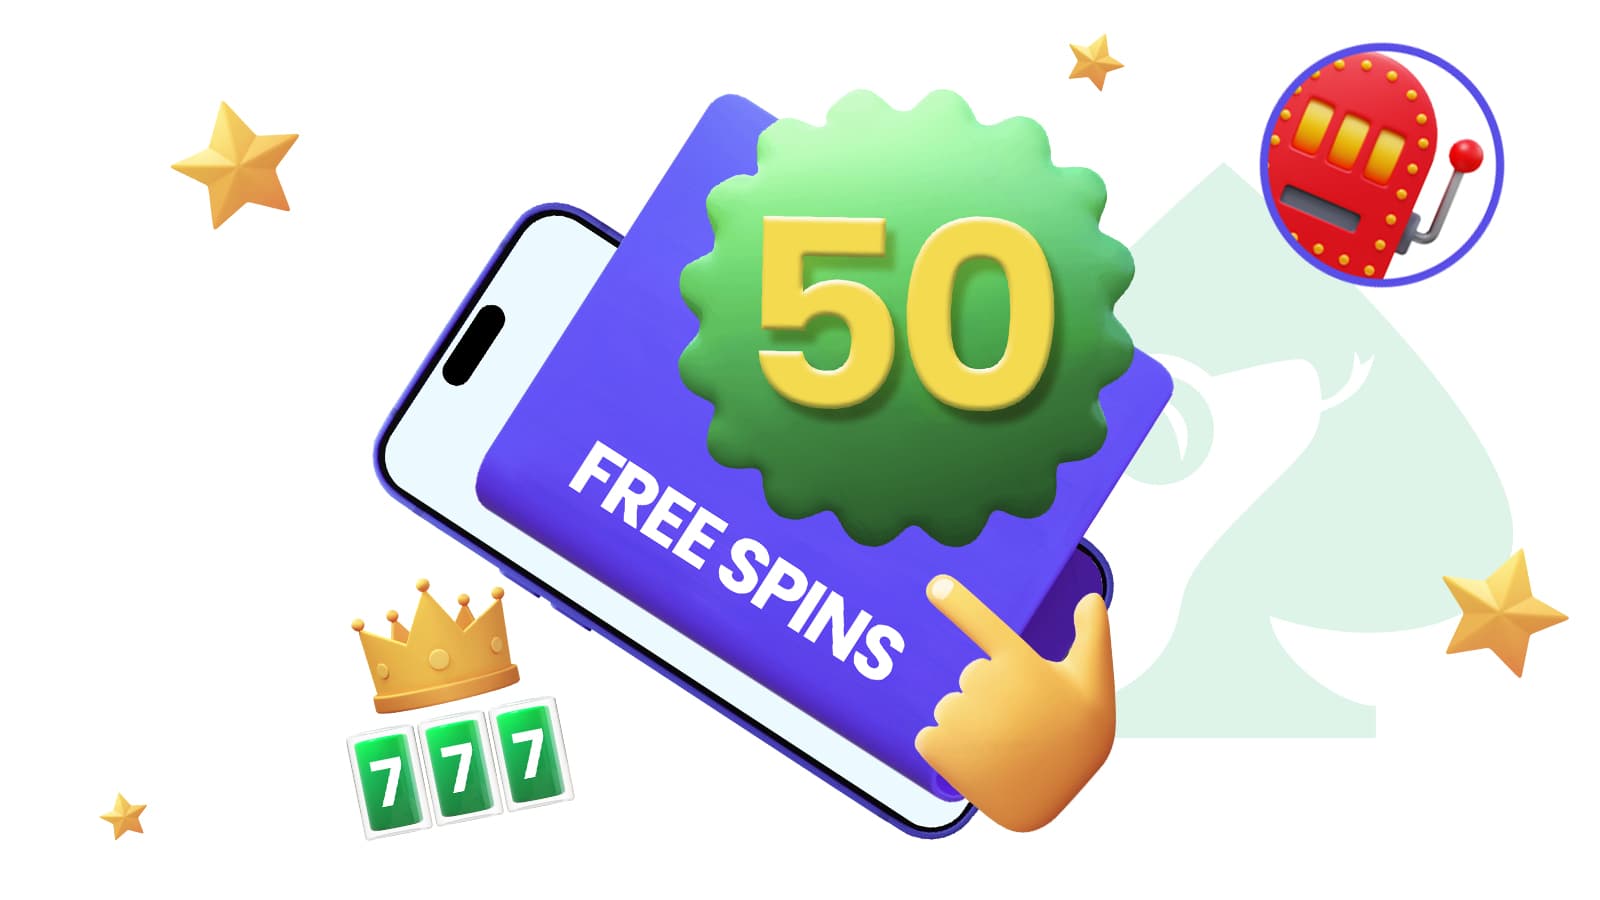 50 free spins online casino